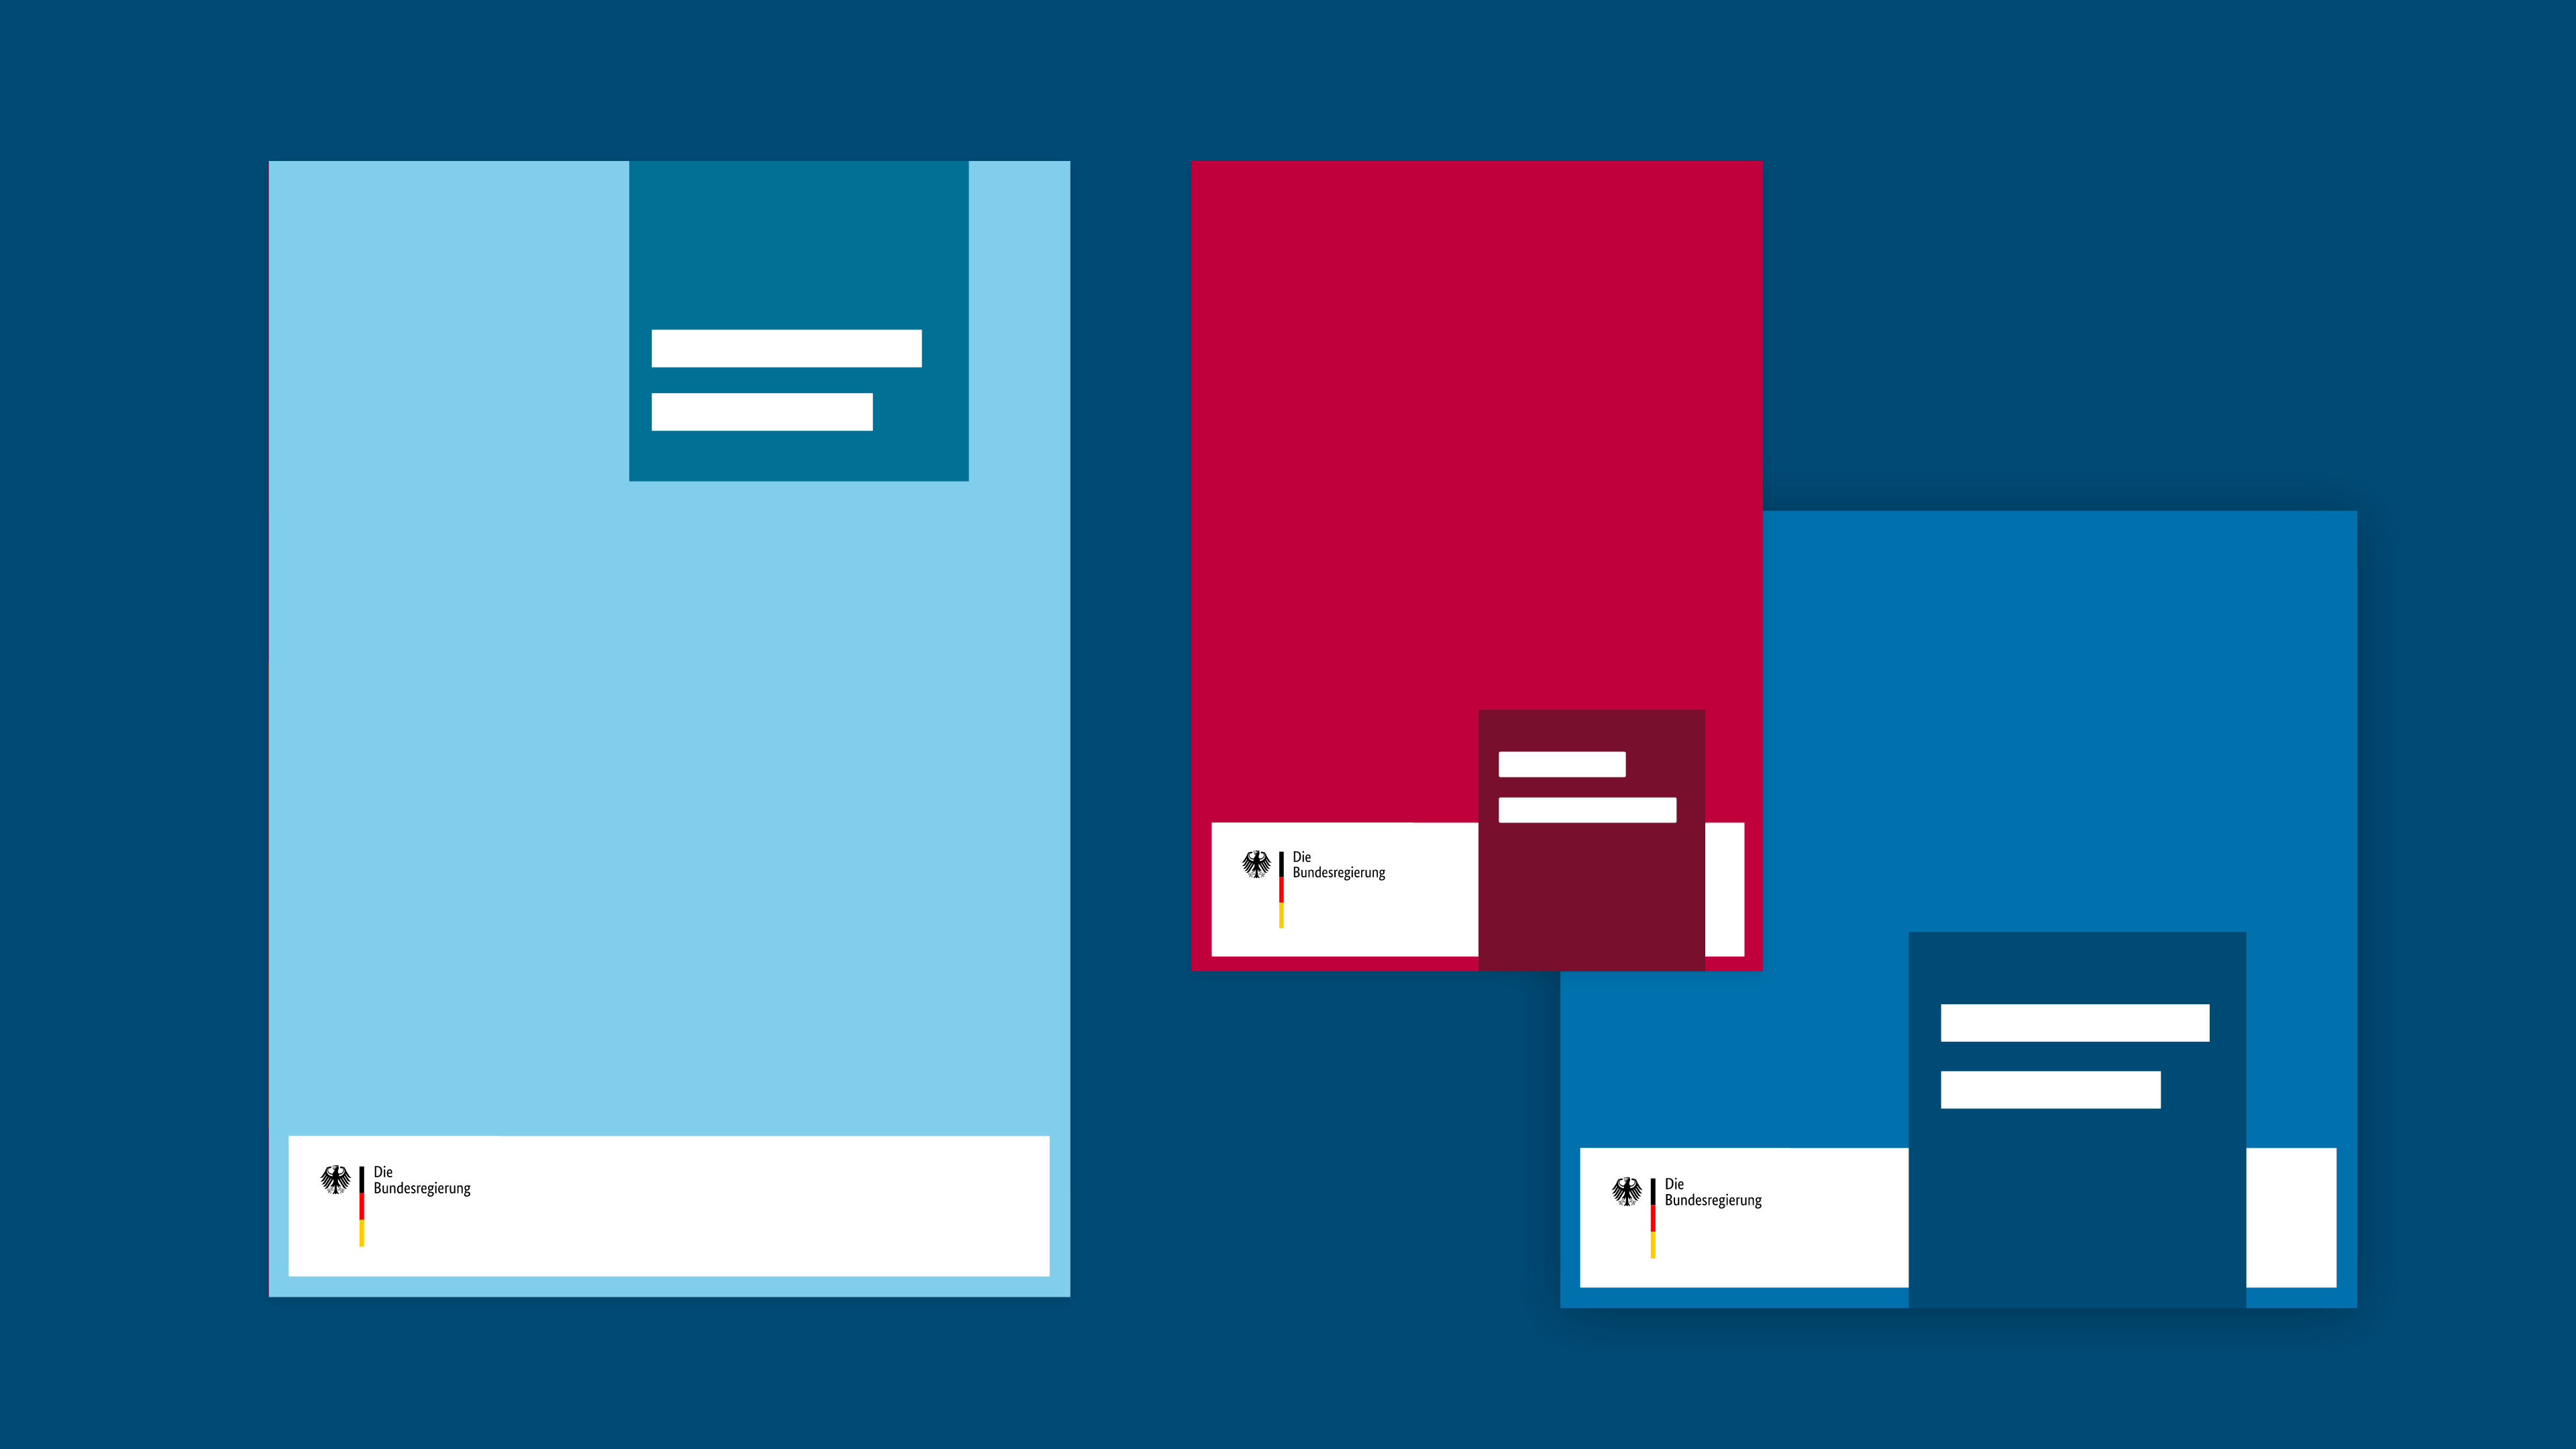 Sitlisierte Darstellung dreier Broschüren unterschiedlicher Formate. Bildwortmarke links im Identitätsbereich platziert.